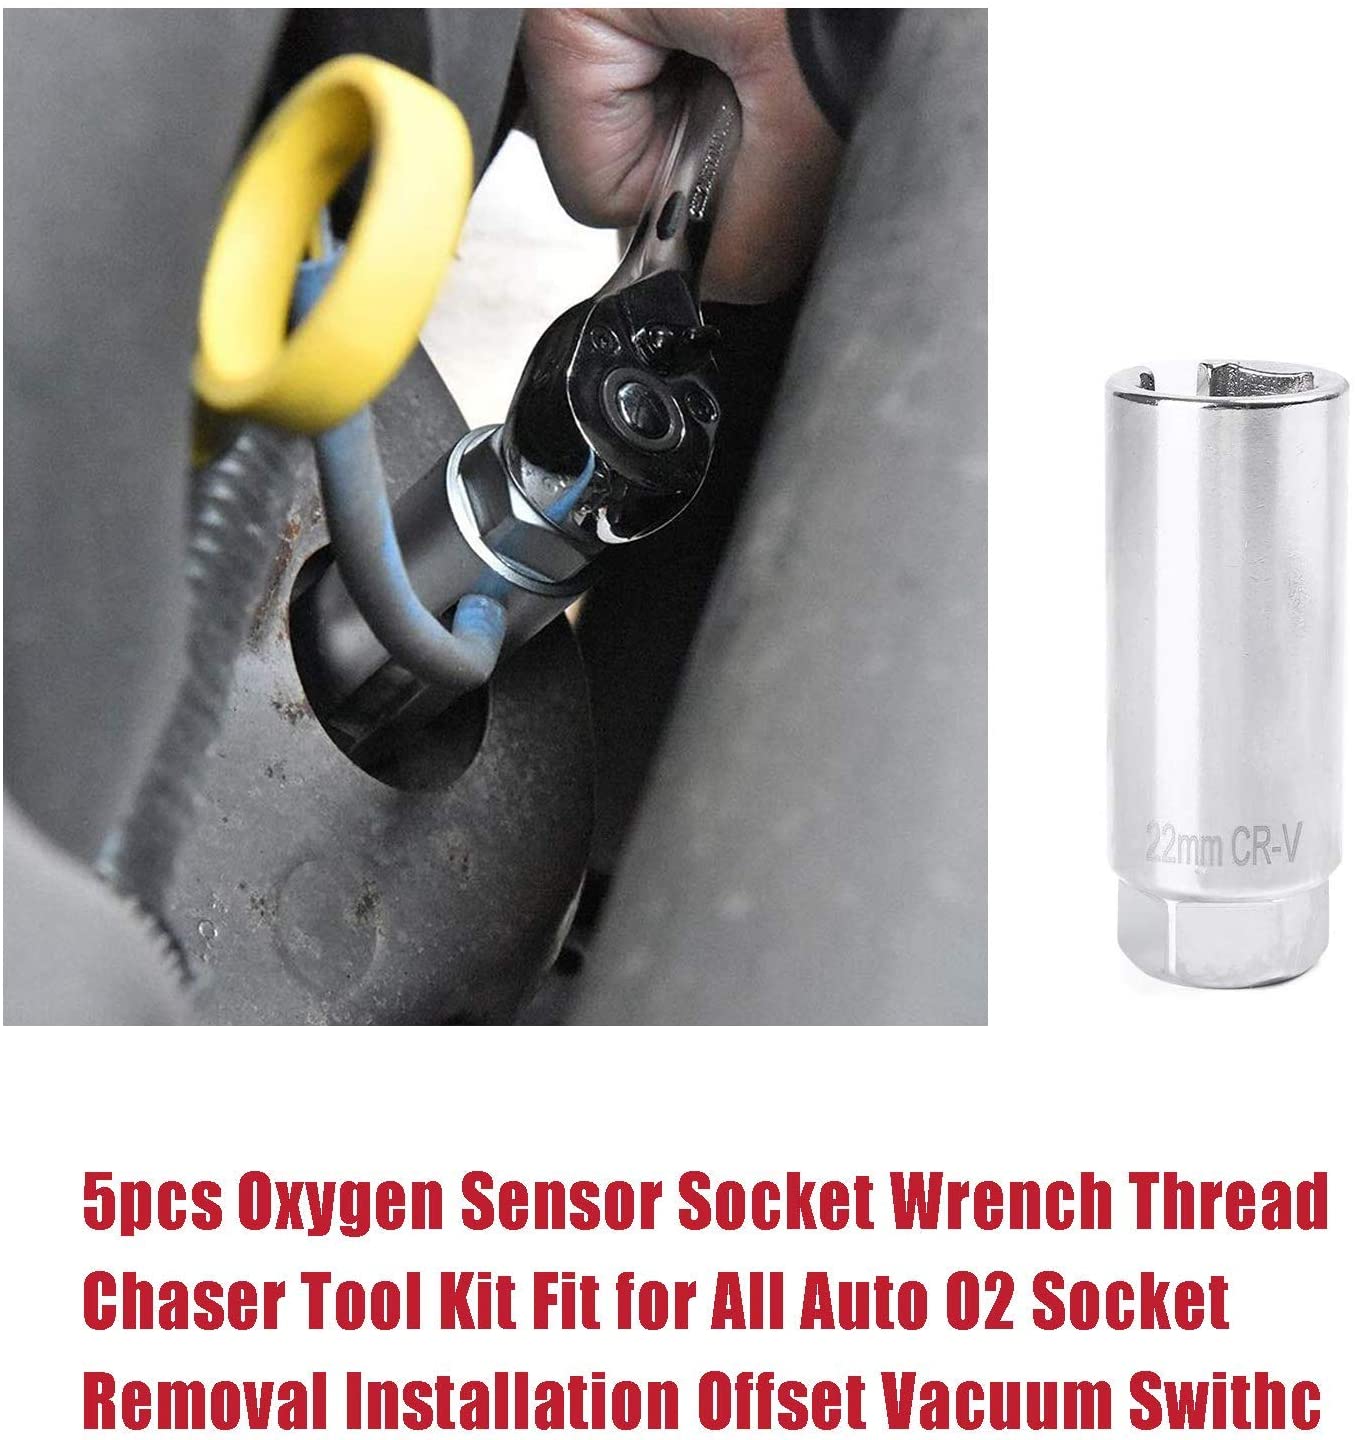 https://www.elehand.com/3st-oxygen-sensor-socket-vacuum-switch-socket-product/